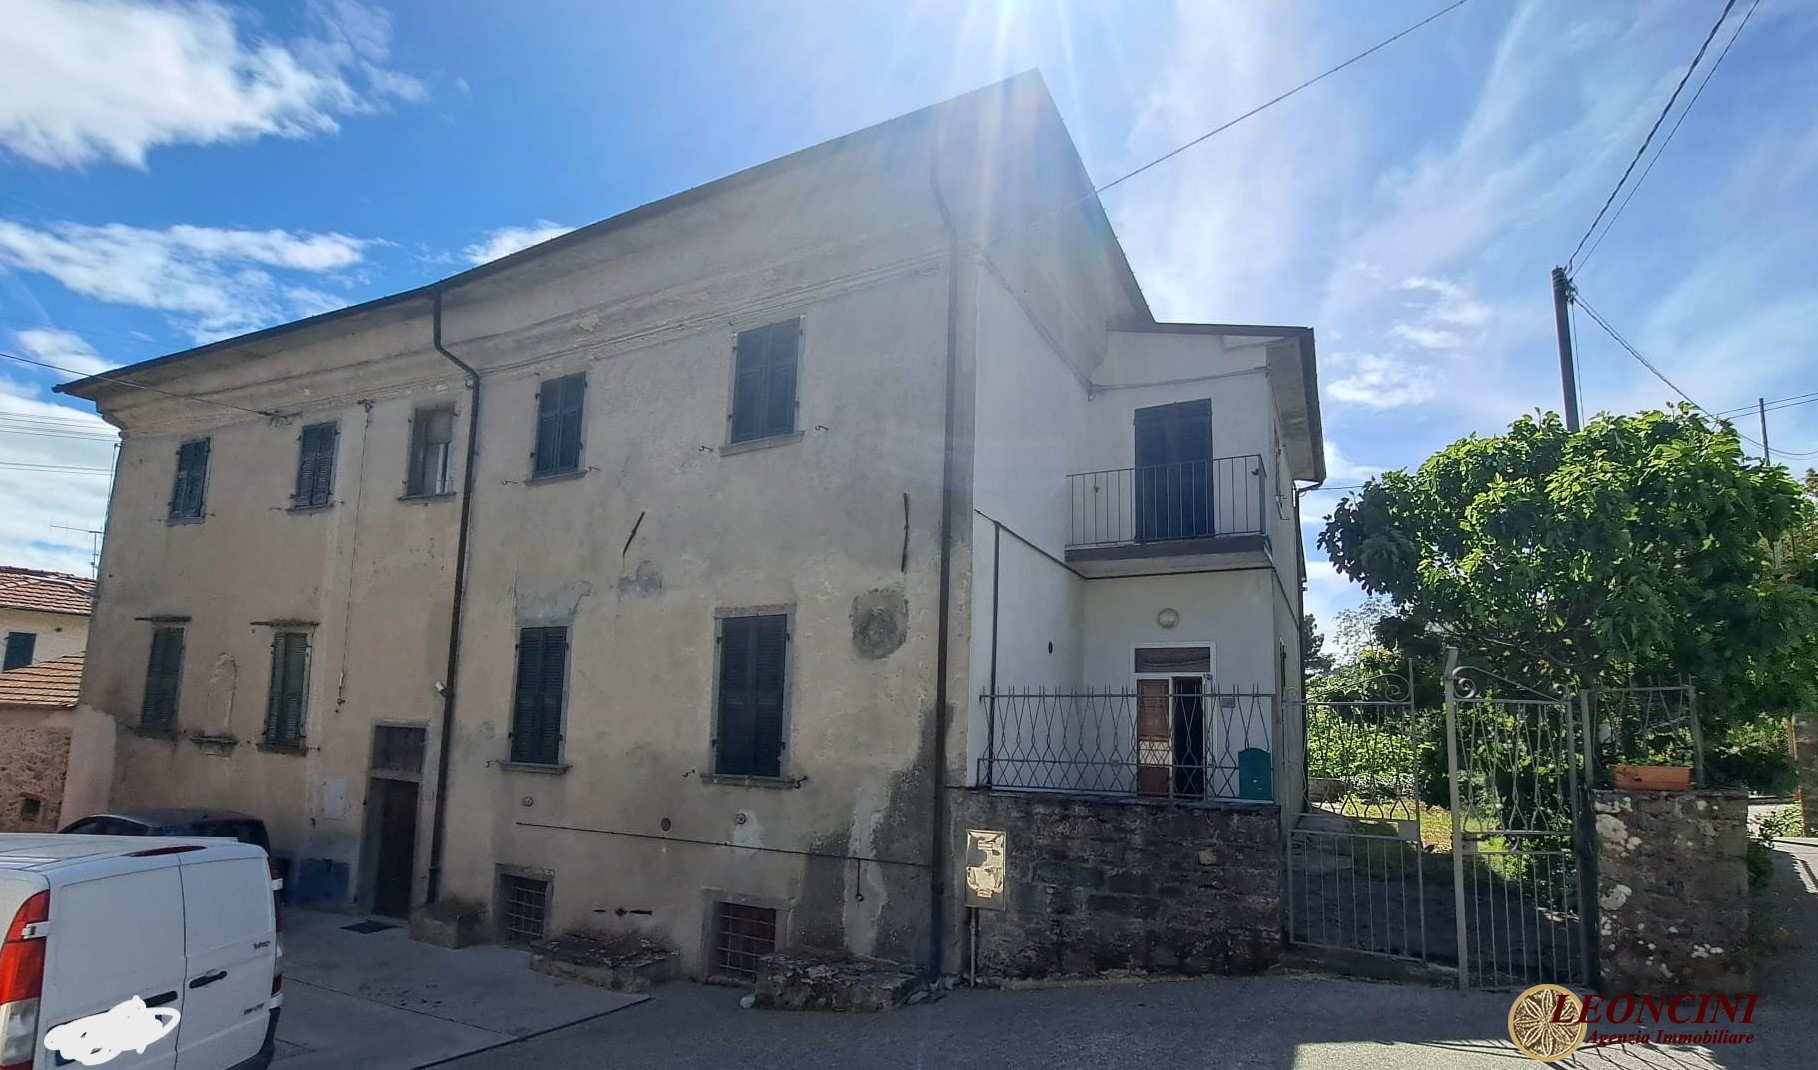 Rustico / Casale in vendita a Mulazzo, 10 locali, prezzo € 140.000 | CambioCasa.it